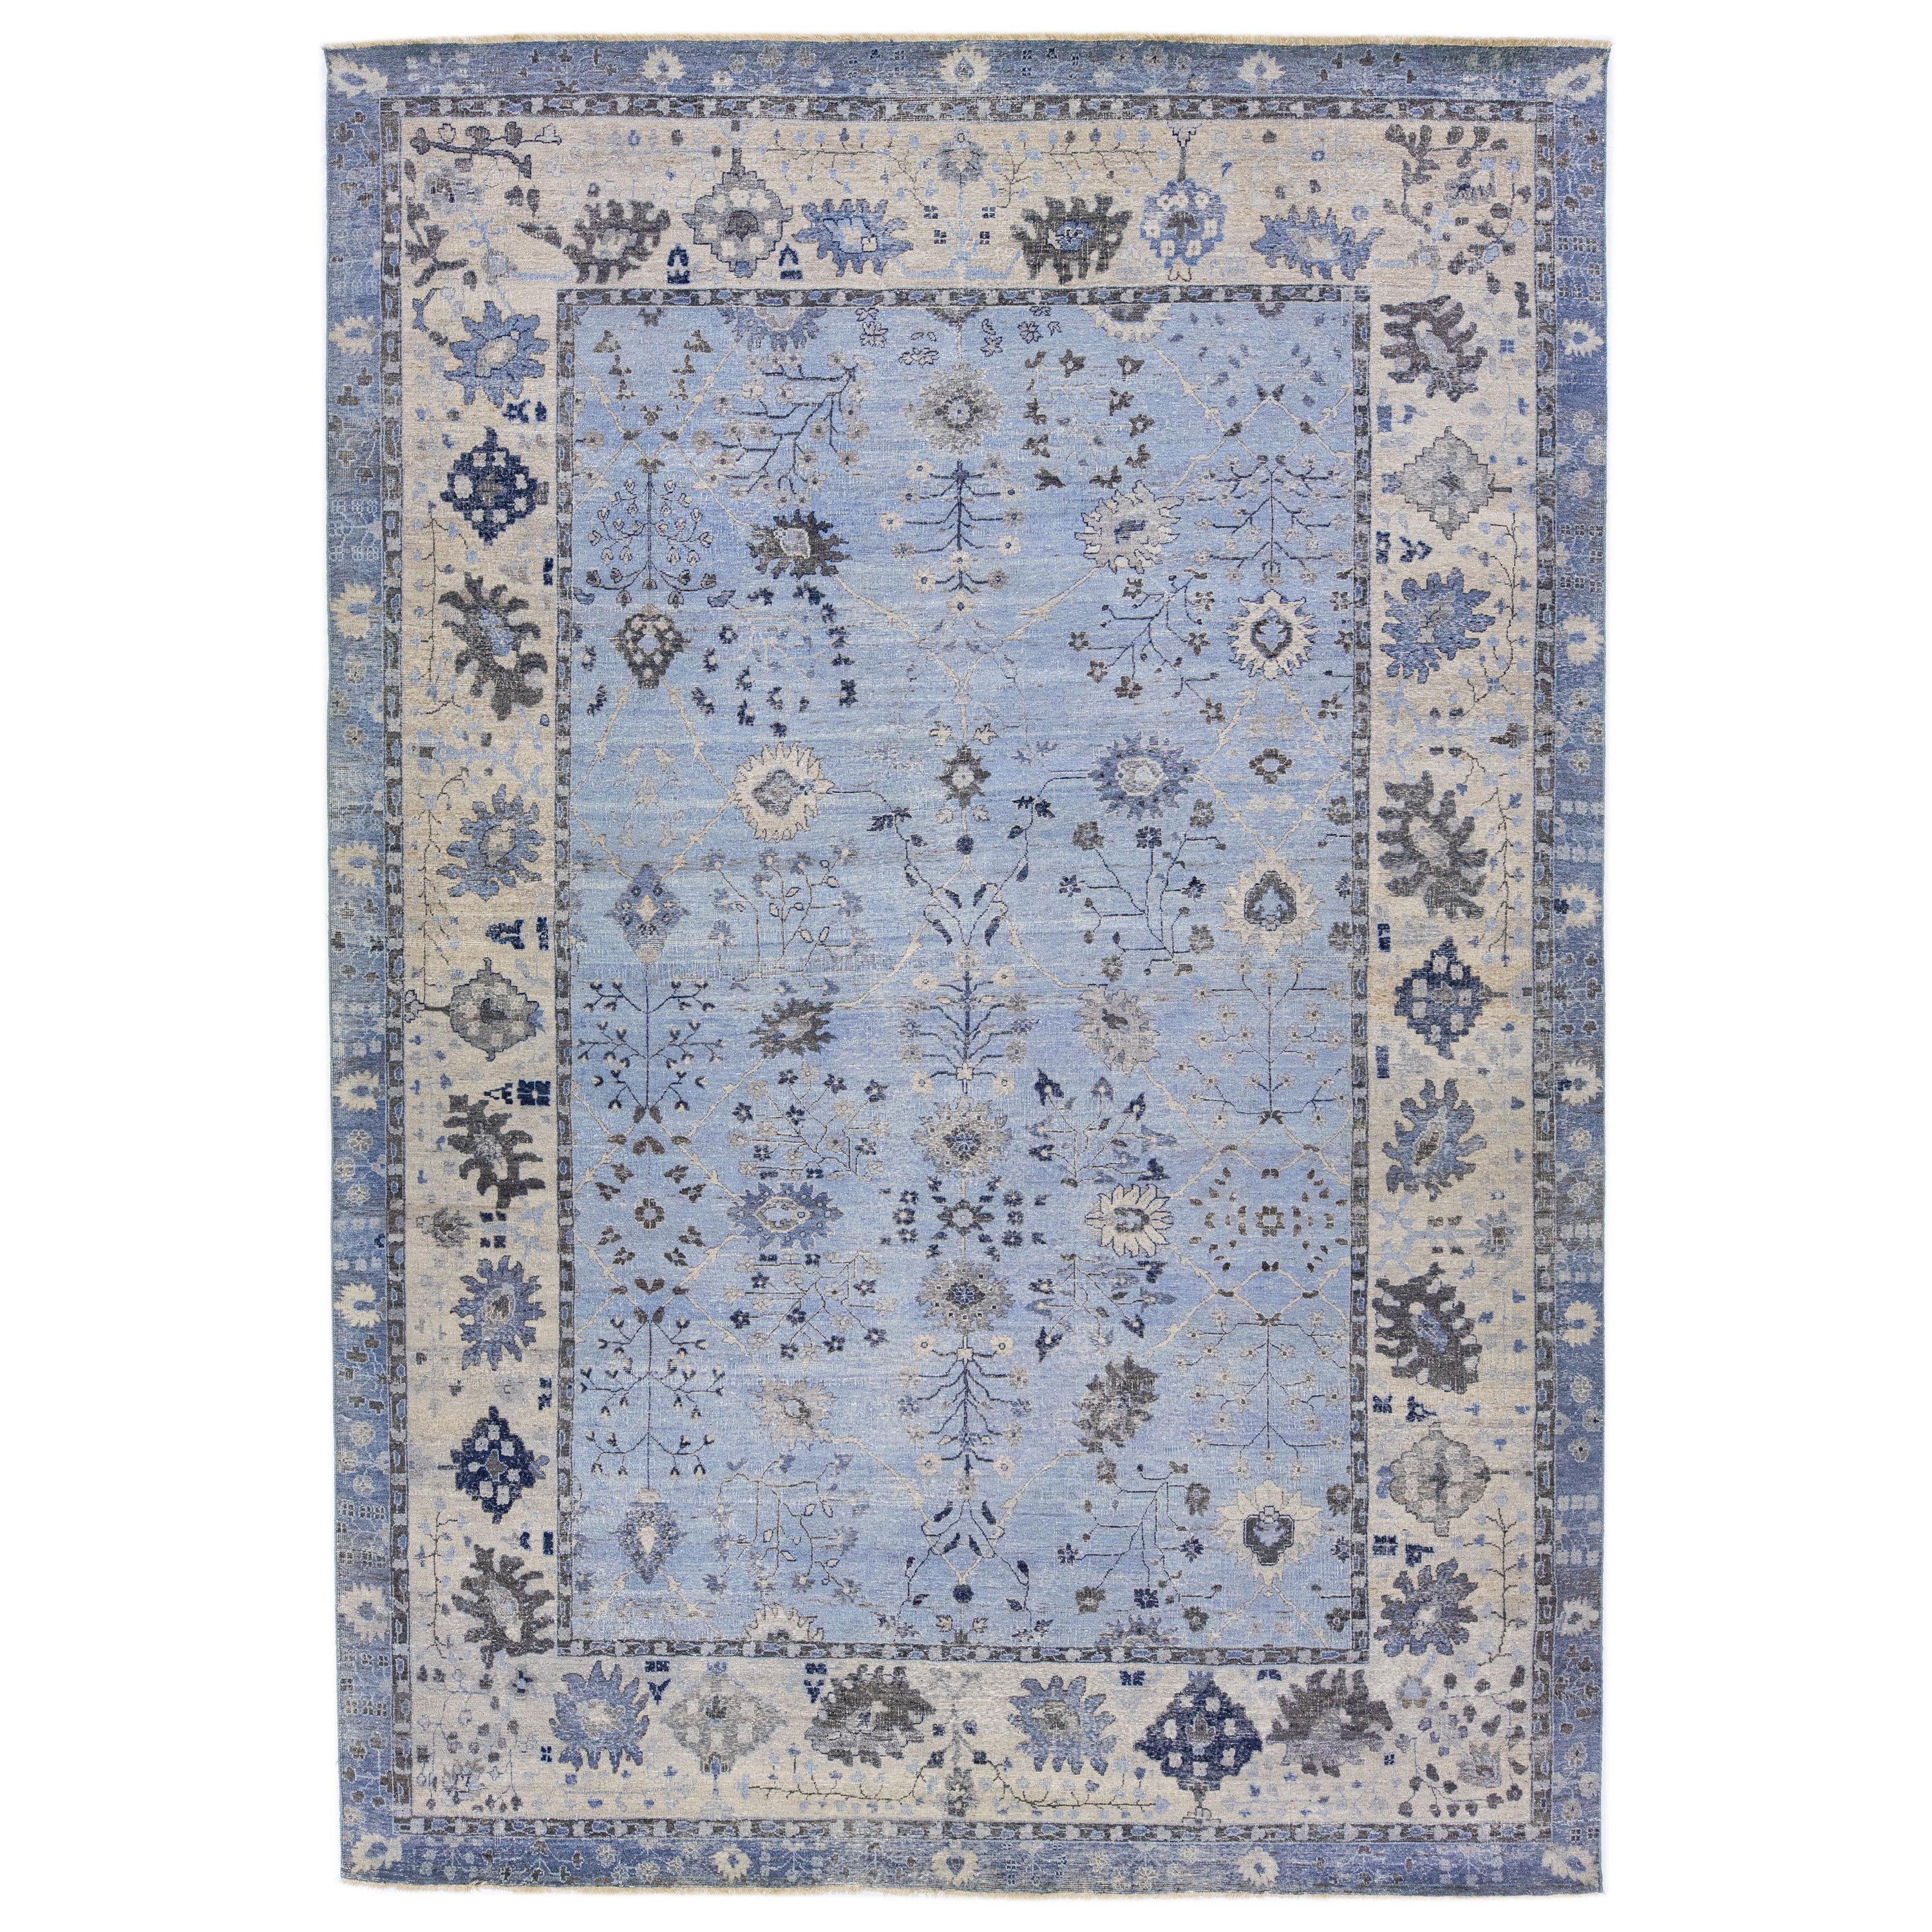 Apadana's Artisan Collection Hellblauer handgefertigter Teppich aus indischer Wolle mit Blumenmuster